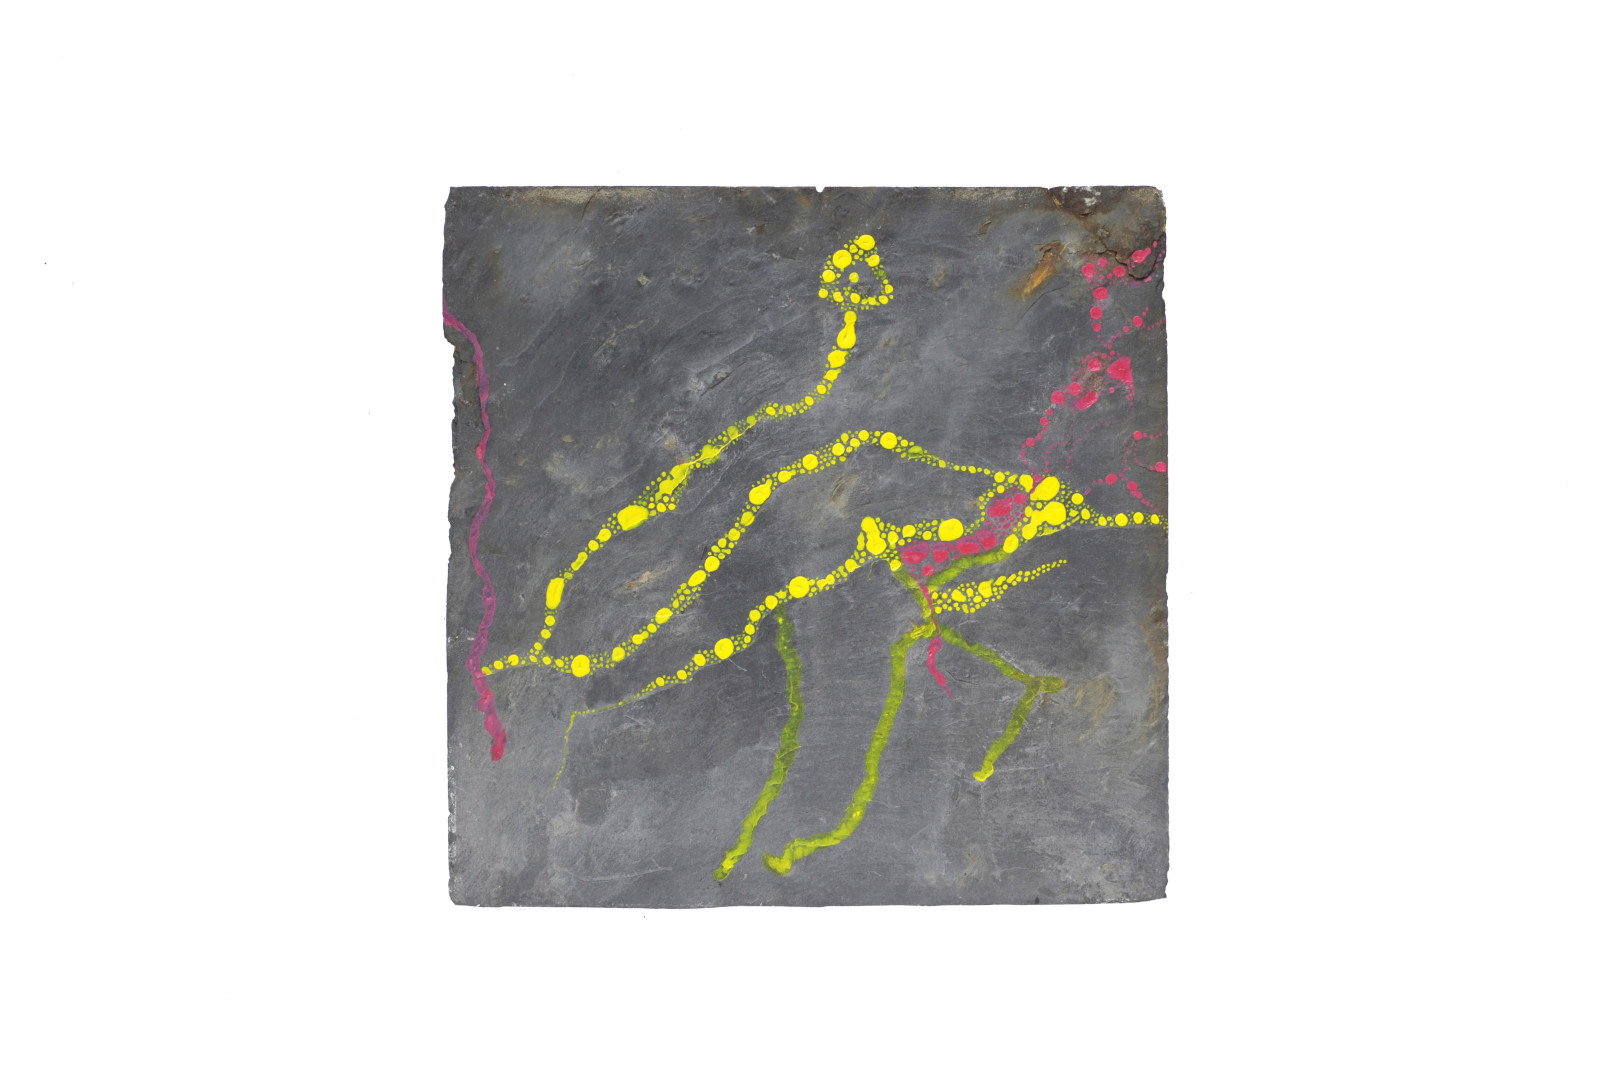 Formes abstraites en jaune et rose vif évoquant des algues, plantes sous-marines ou organismes des mondes sous-marins peintes sur une ardoise